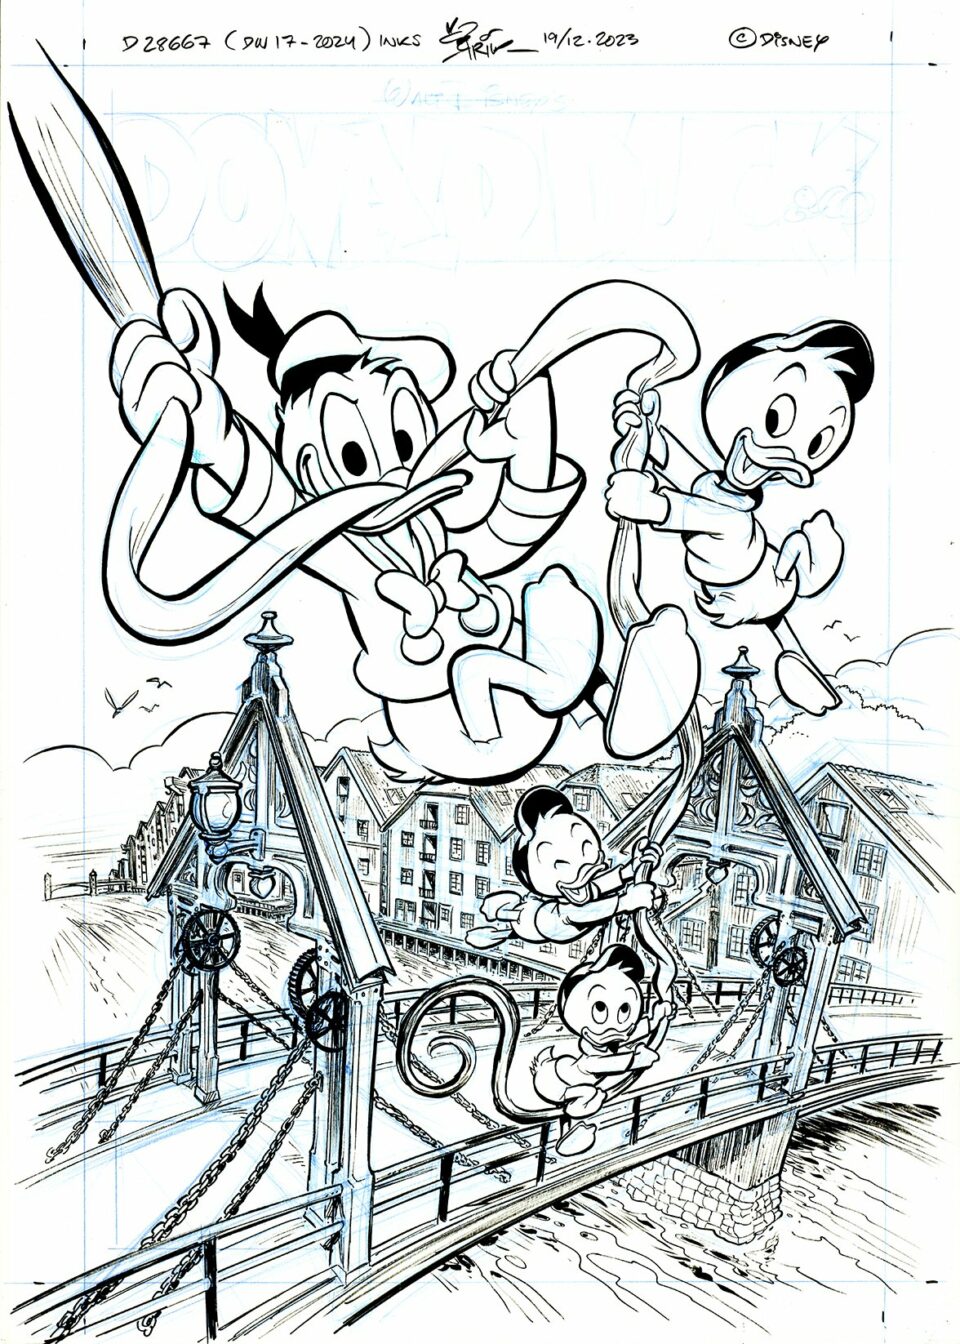 Svart-hvitt-tegning av disney-karakterene Mikke, Donald og klønete som lekende glir ned tauene over en bro, med Mikke som leder og klønete følger bak.